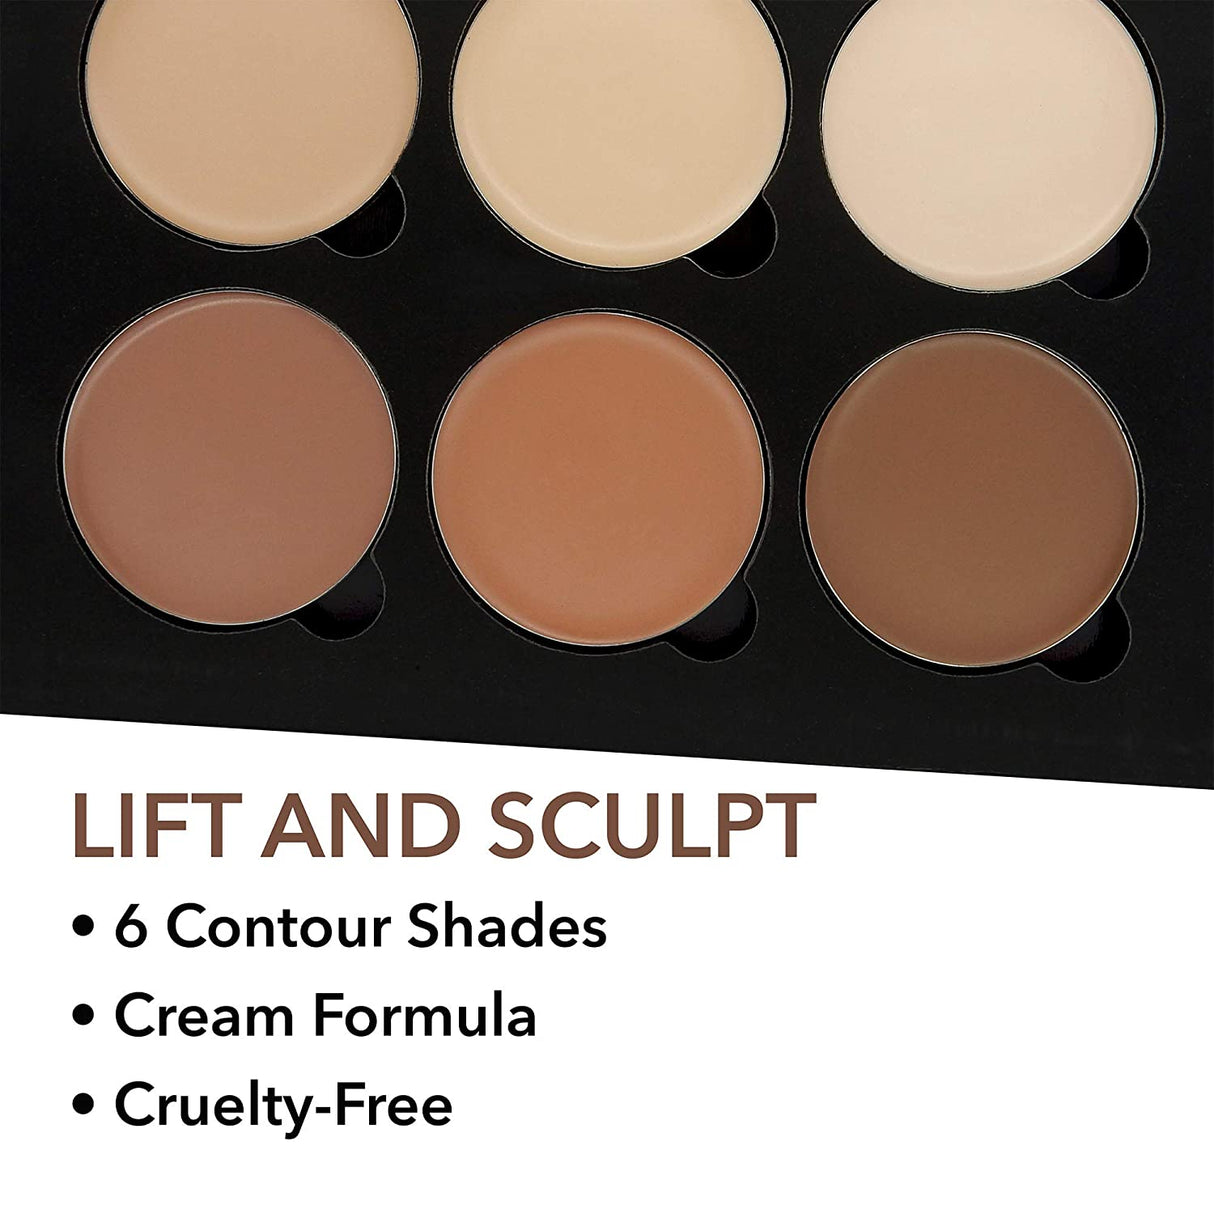 W7 Lift & Sculpt Creme Contour Set – Make-Up Palette Zum Abdecken, Highlighten Und Konturieren – Schritt-Für-Schritt-Anleitung Enthalten